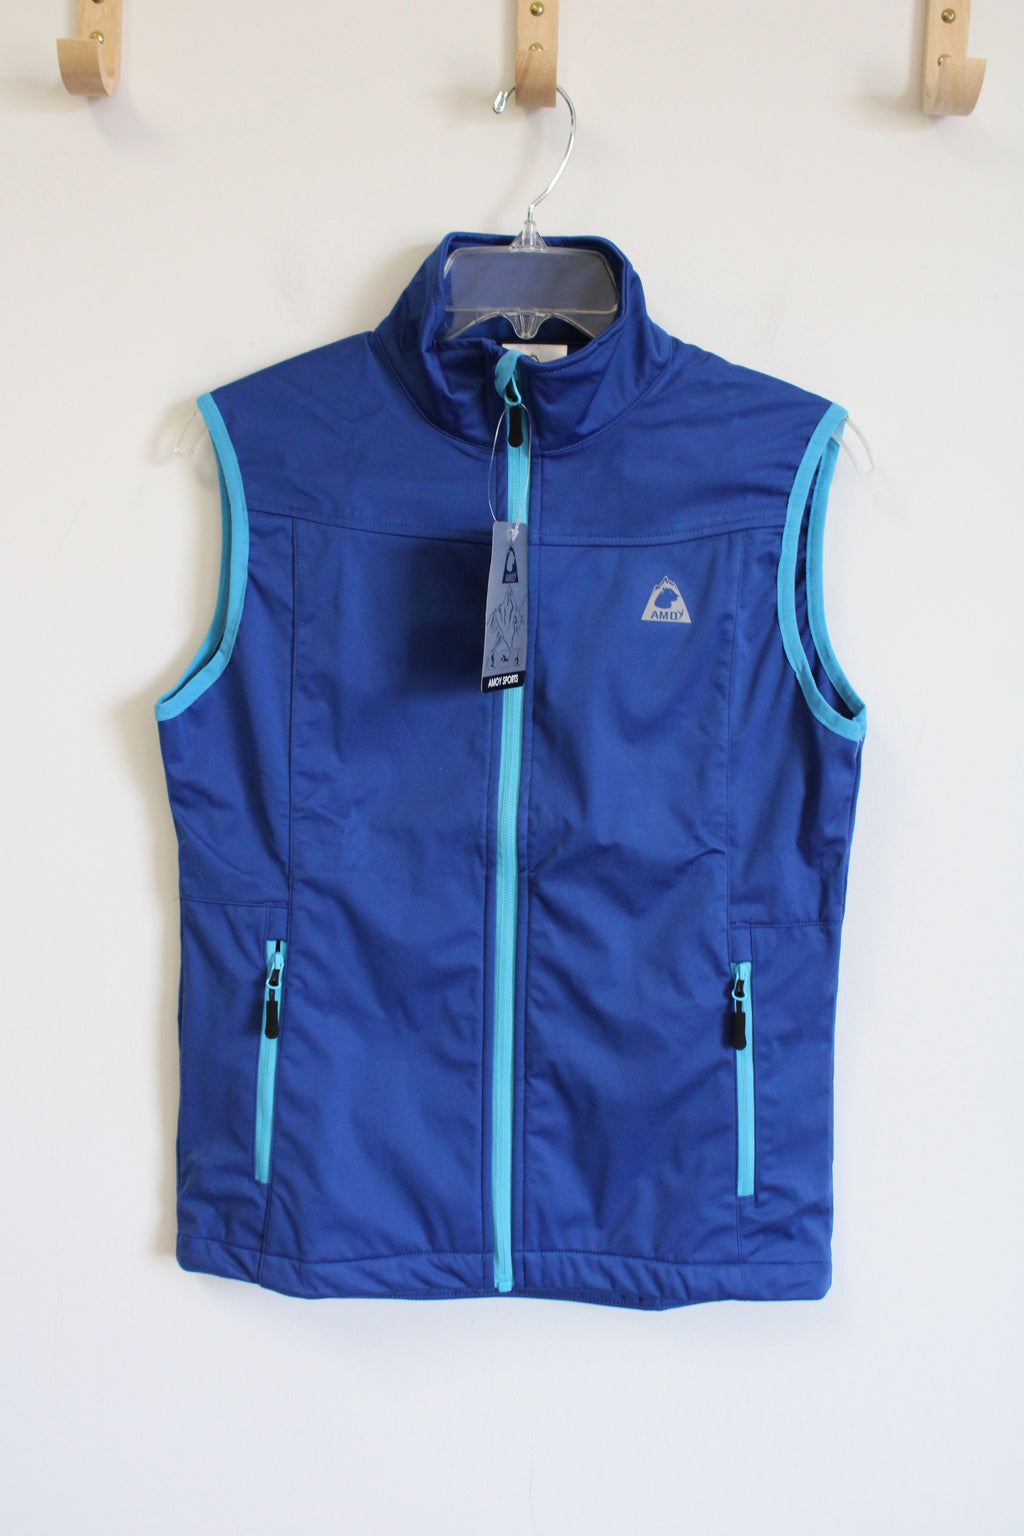 NEW Amoy Sports Blue Vest | S